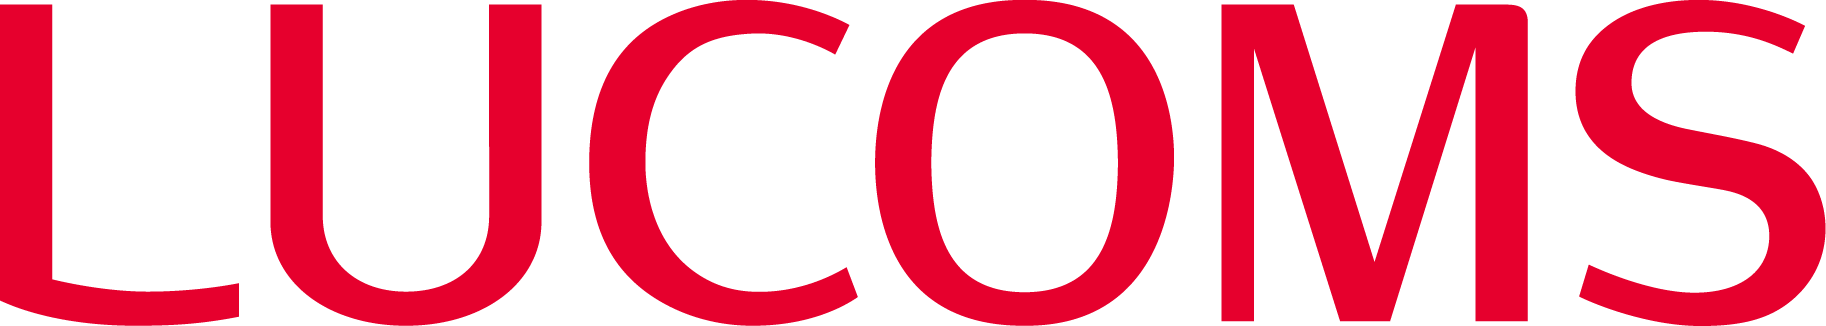 대우루컴즈의 로고 이미지